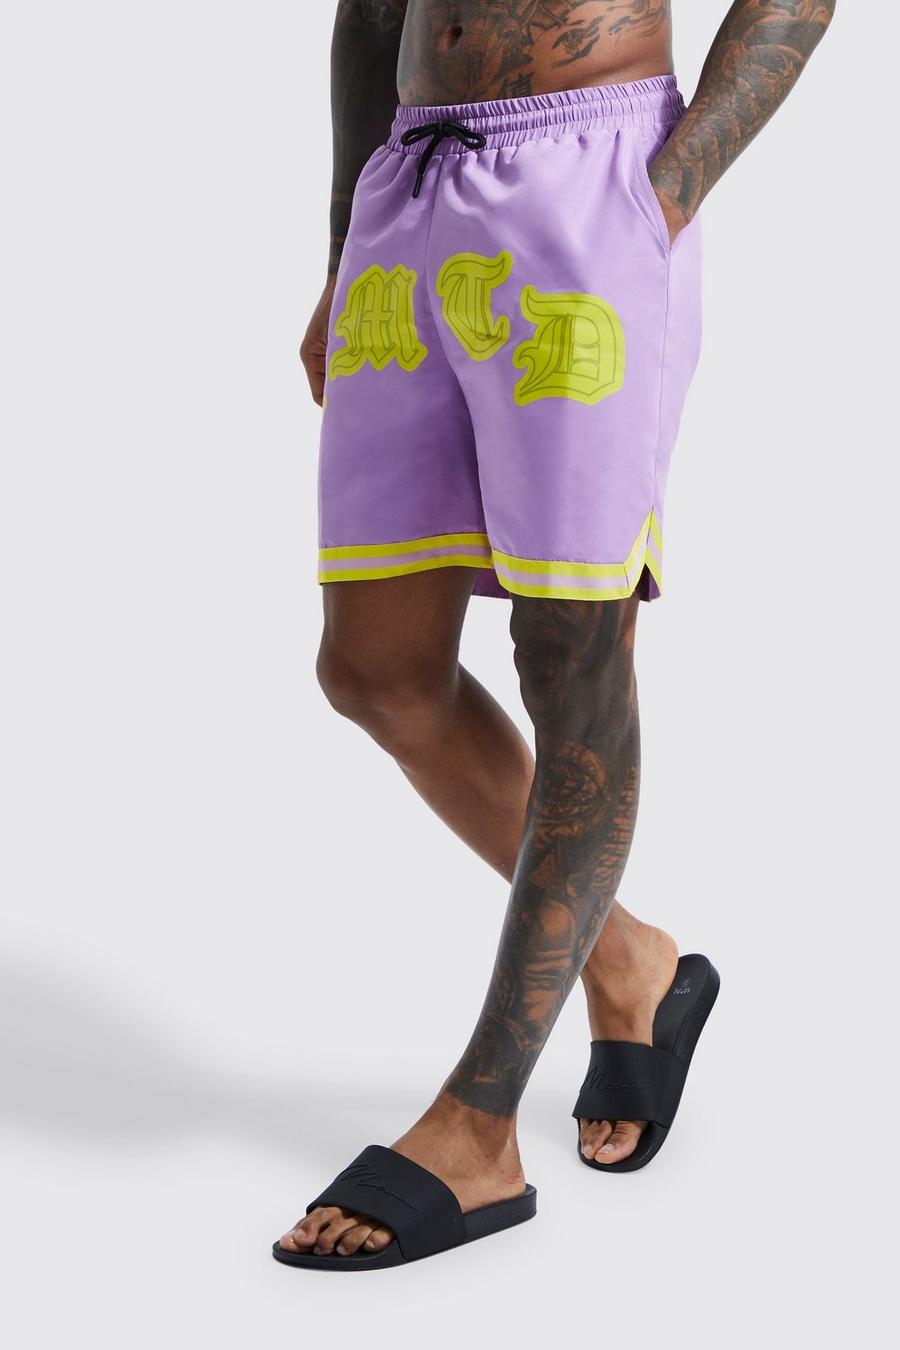 Bañador de largo medio estilo baloncesto Limited, Purple morado